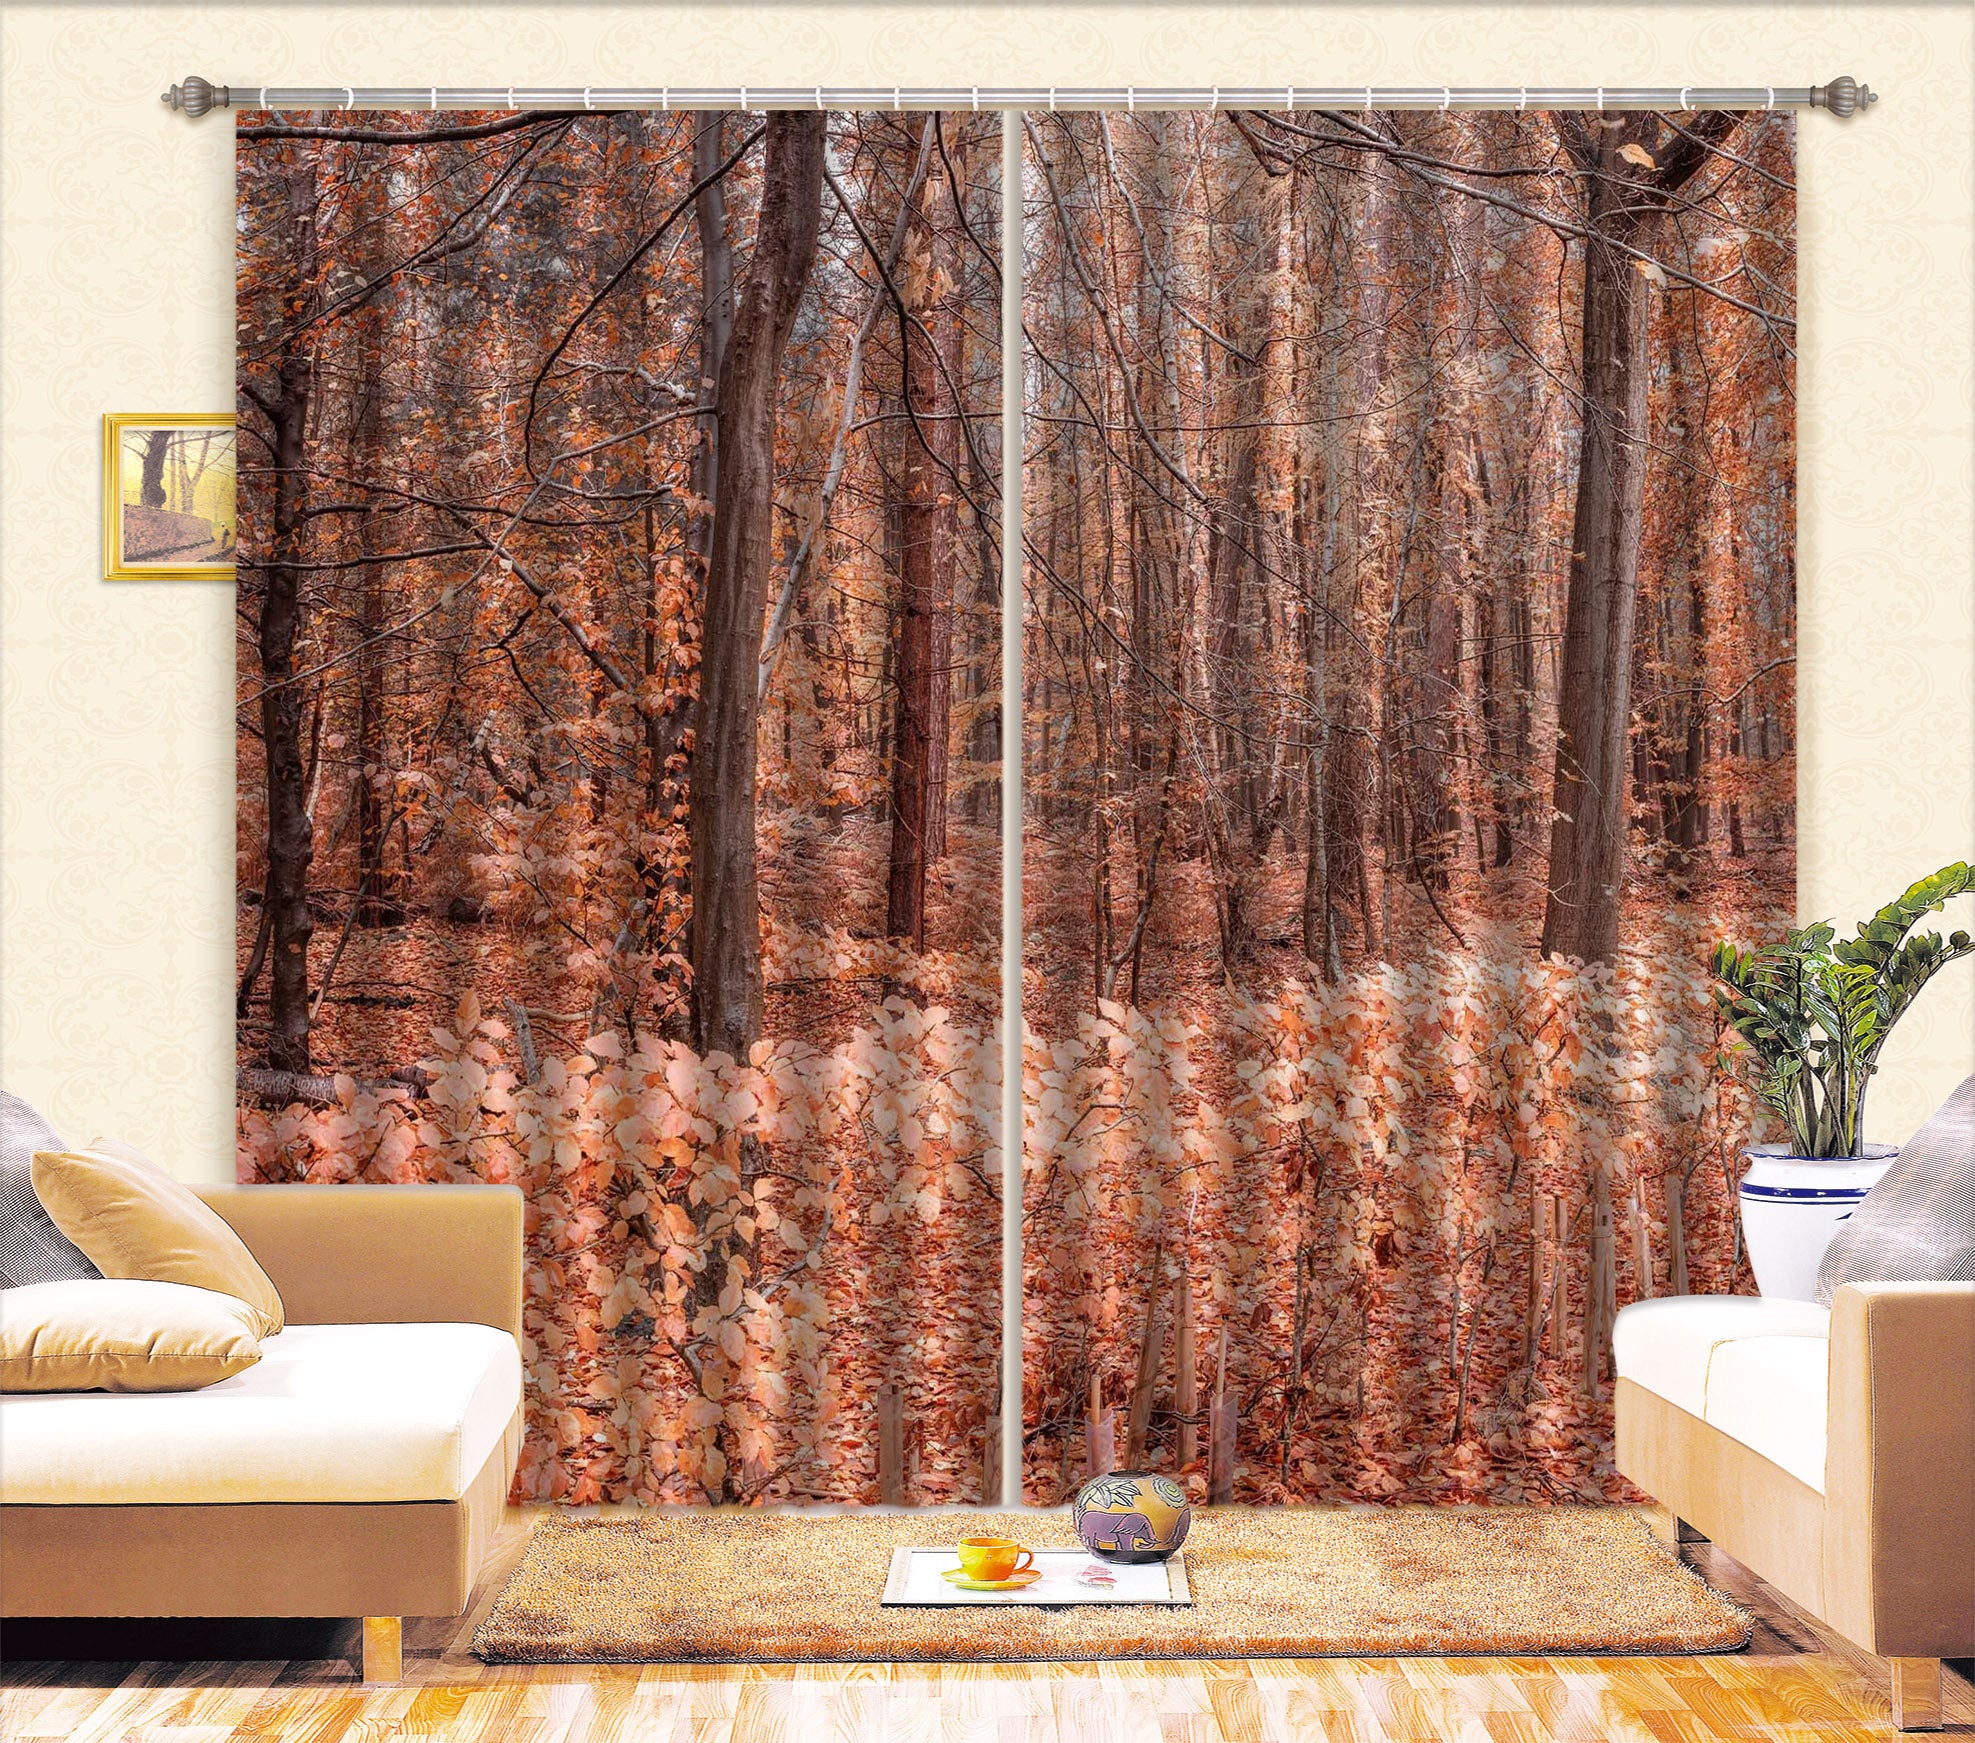 3D Autumn Woods 6334 Assaf Frank Curtain Curtains Drapes